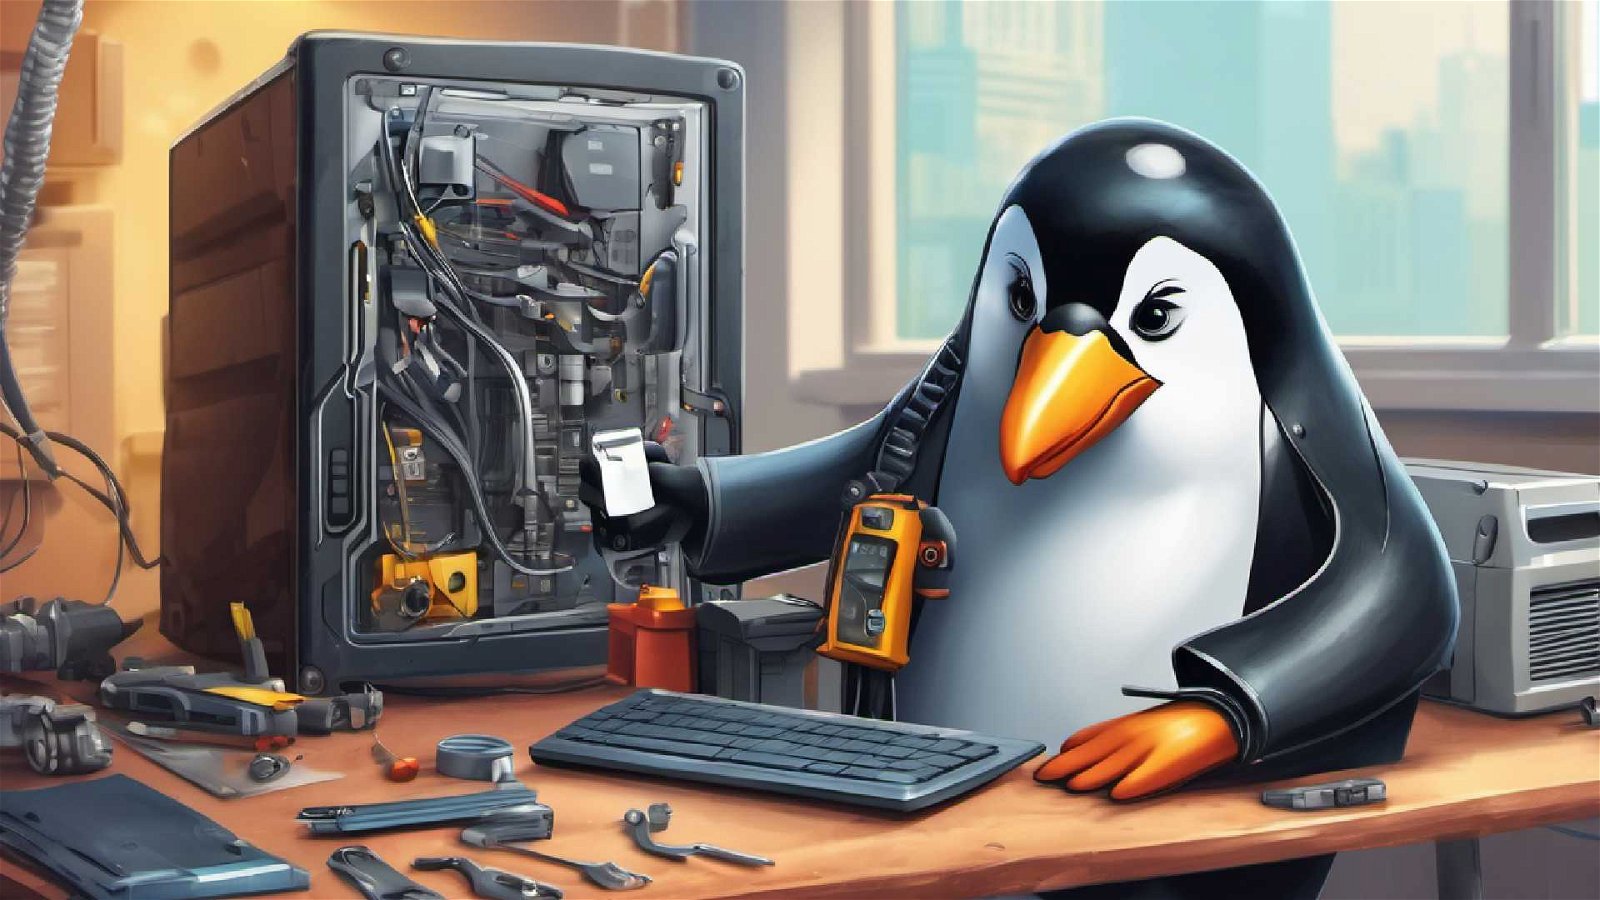 Immagine di Linux sotto assedio, ci sono molti attacchi contro gli anelli più deboli